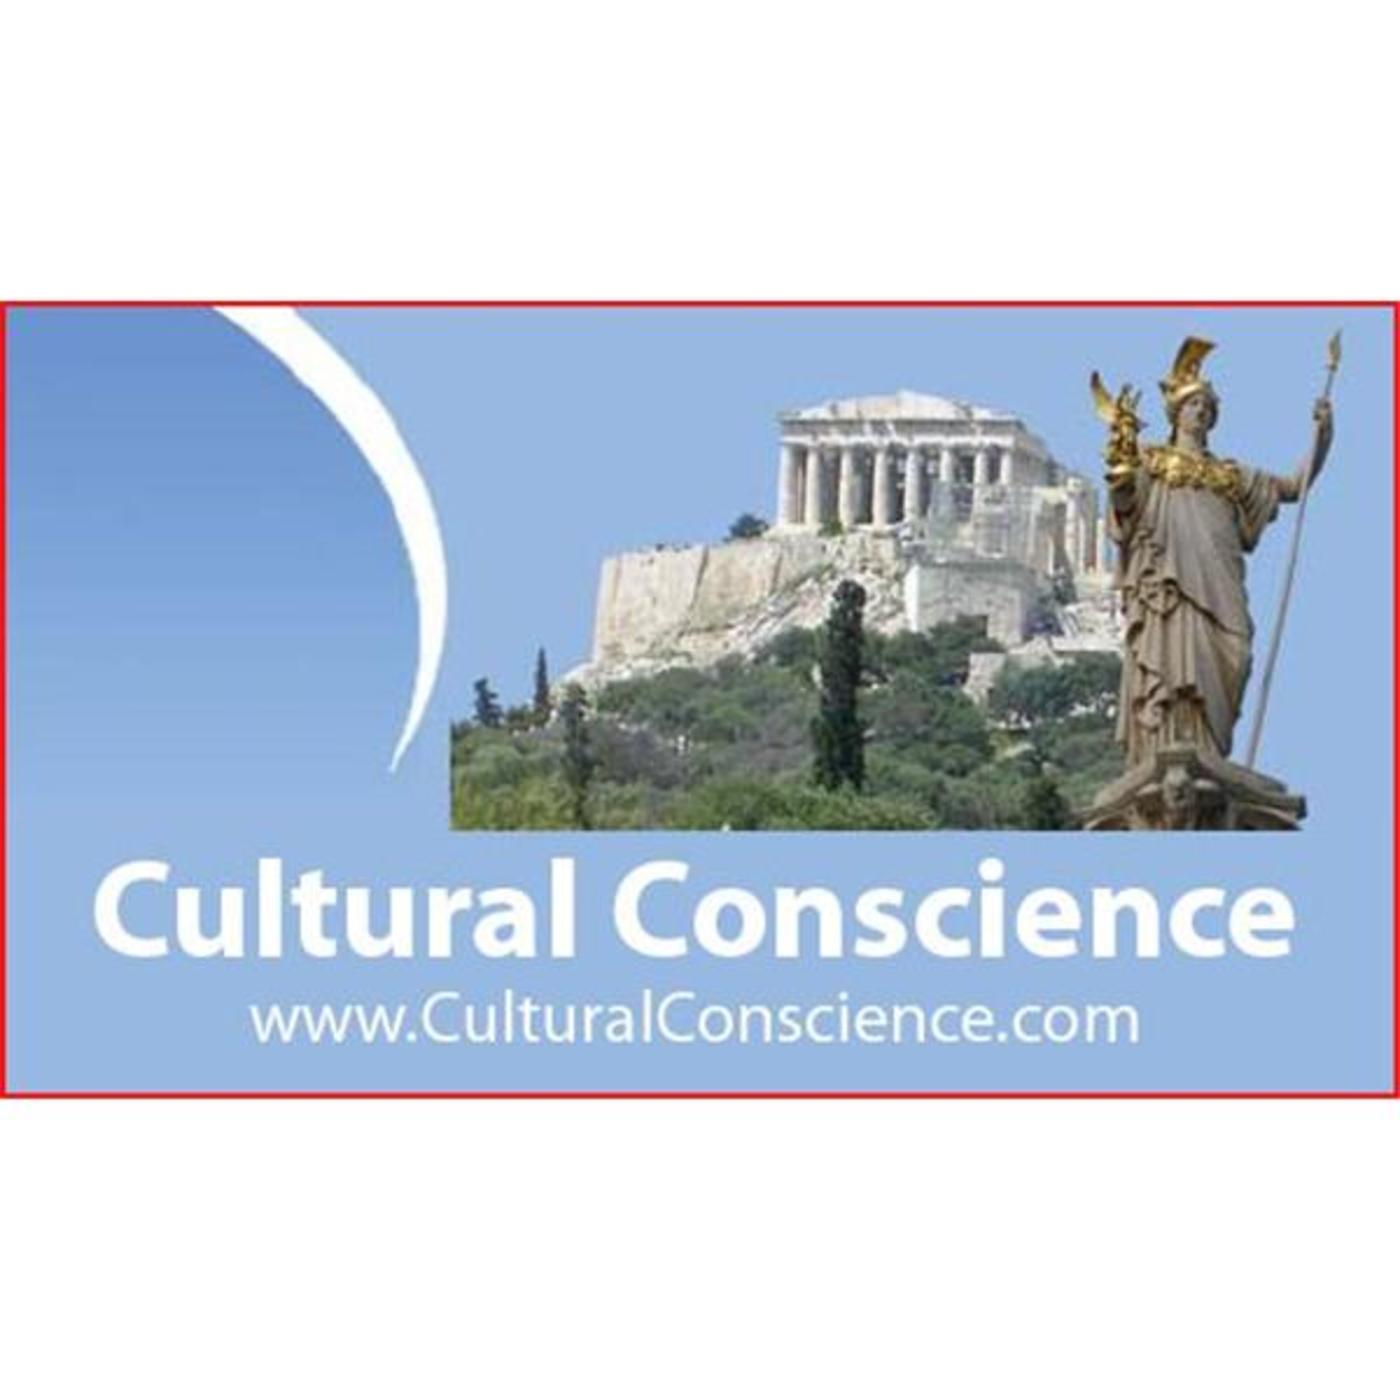 Cultural Conscience